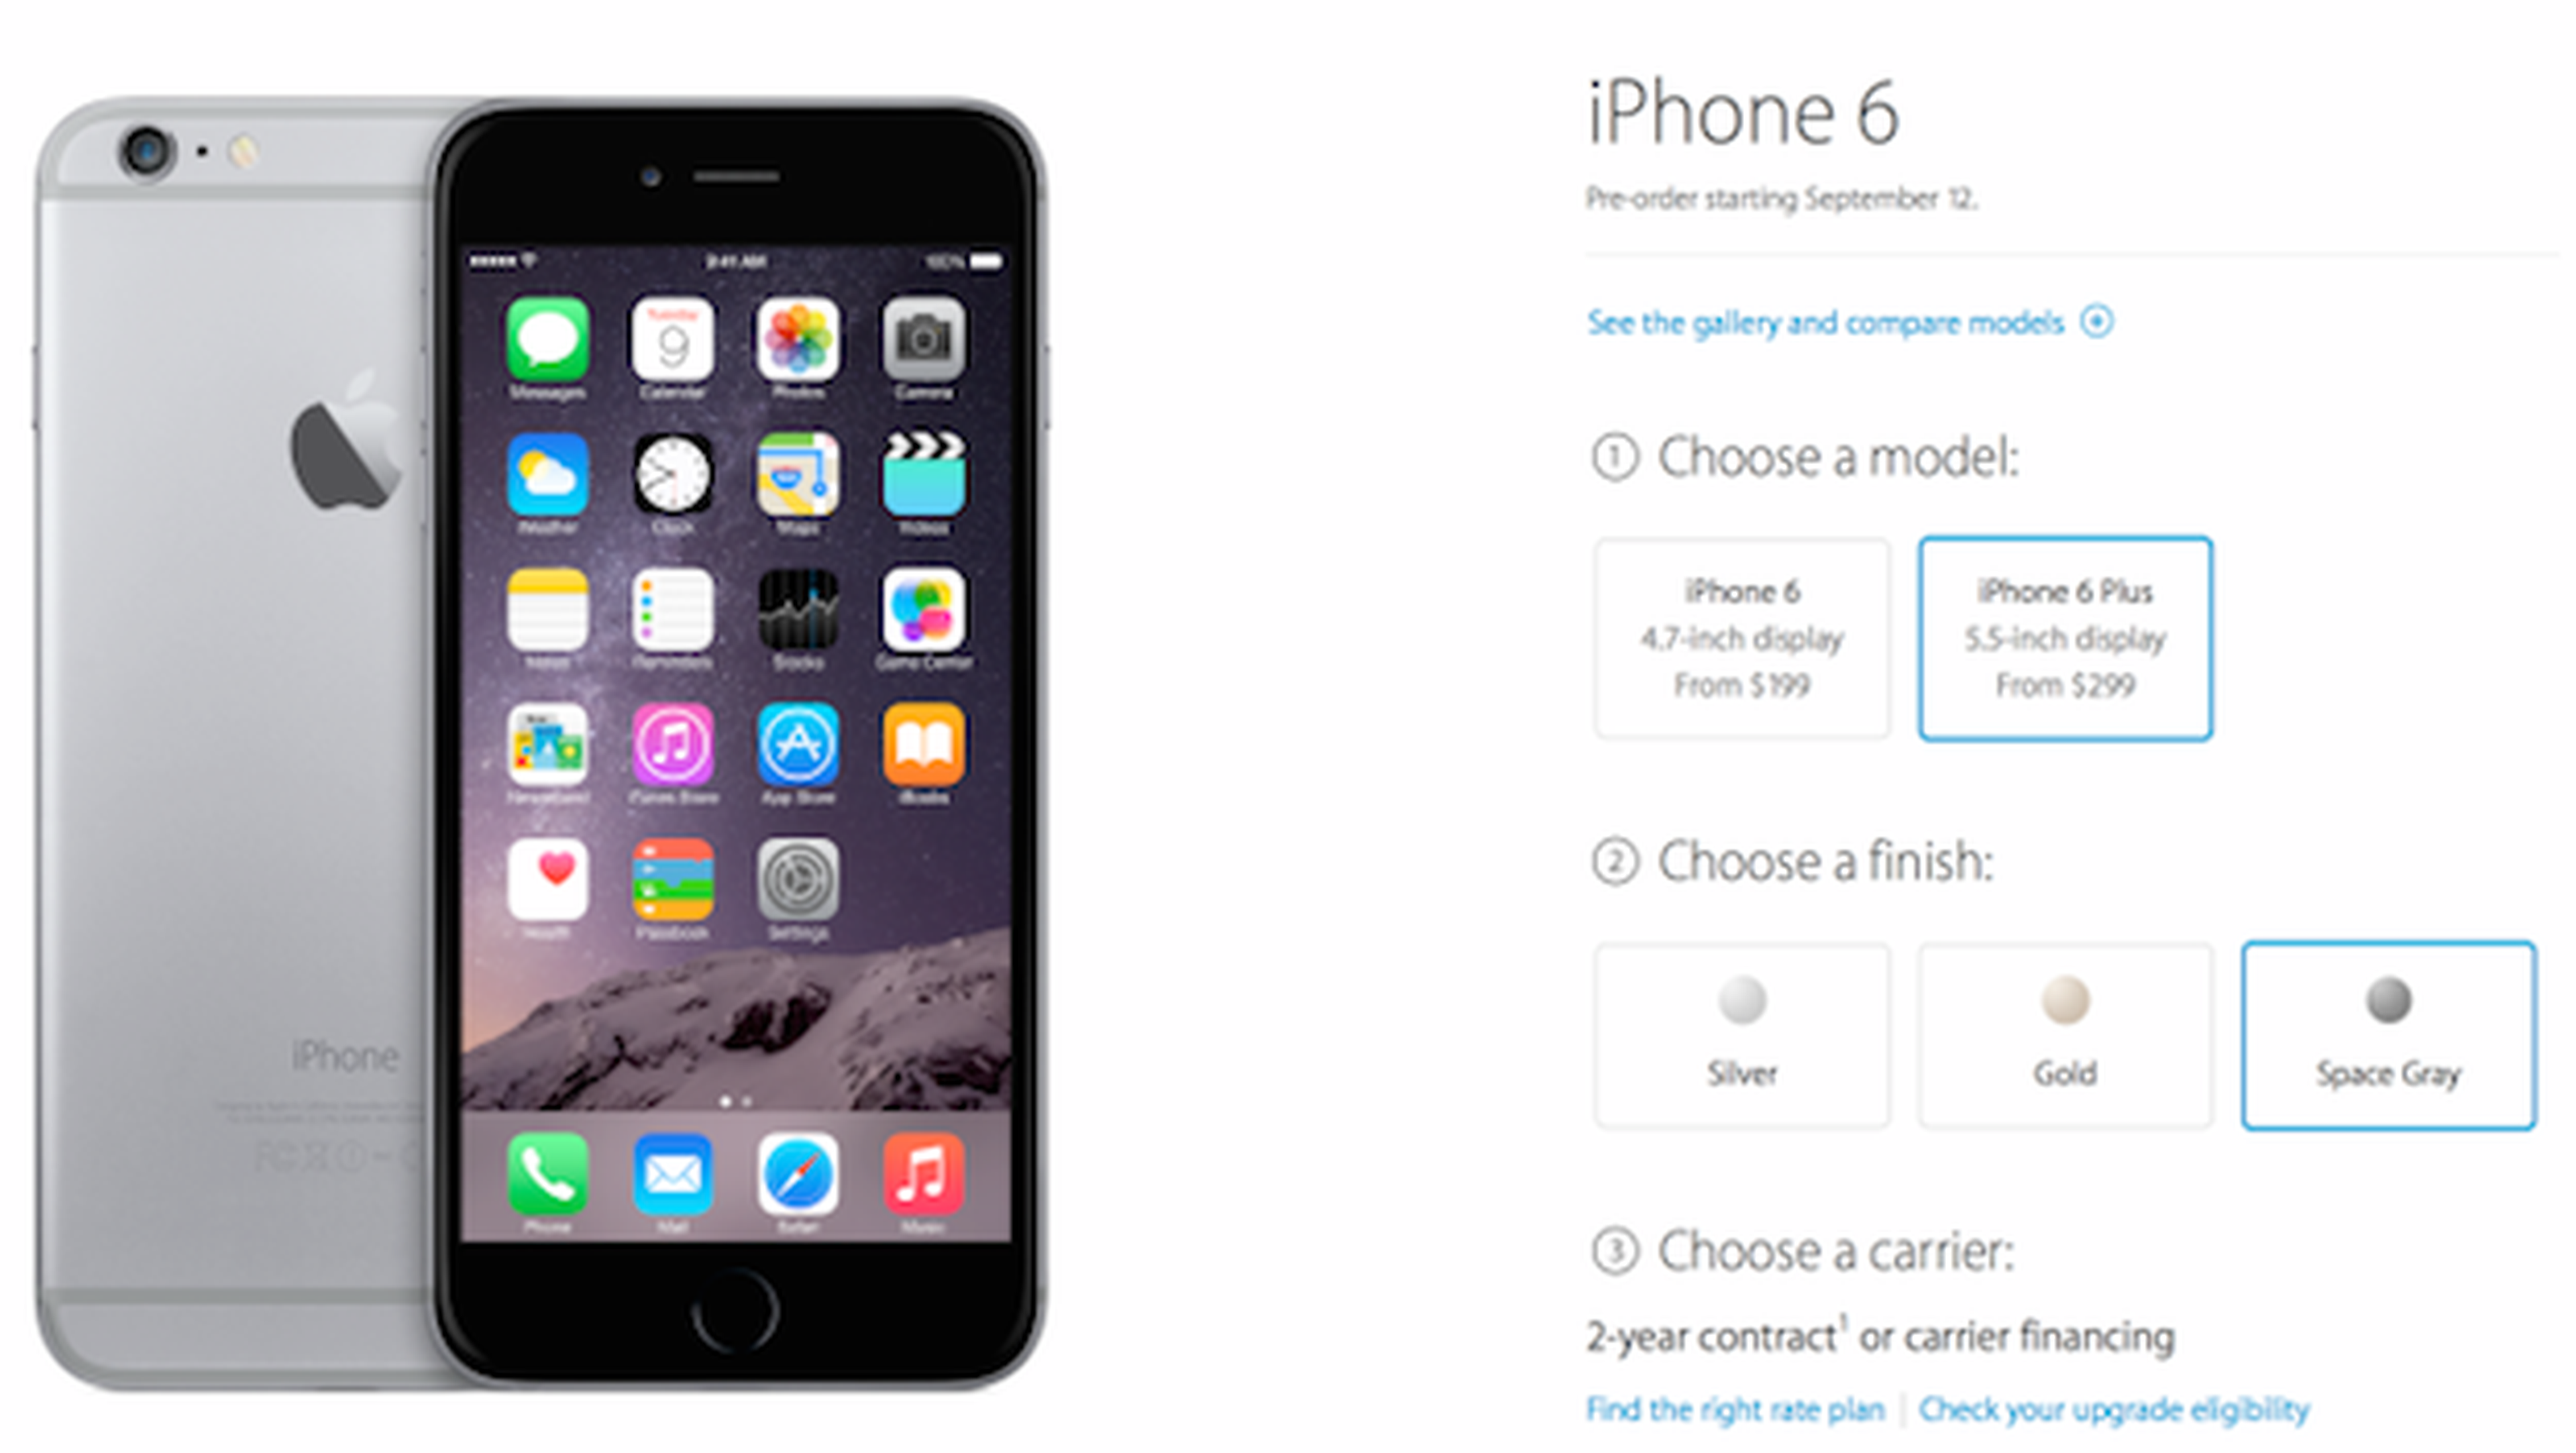 Apple aceptará órdenes iPhone 6 el viernes